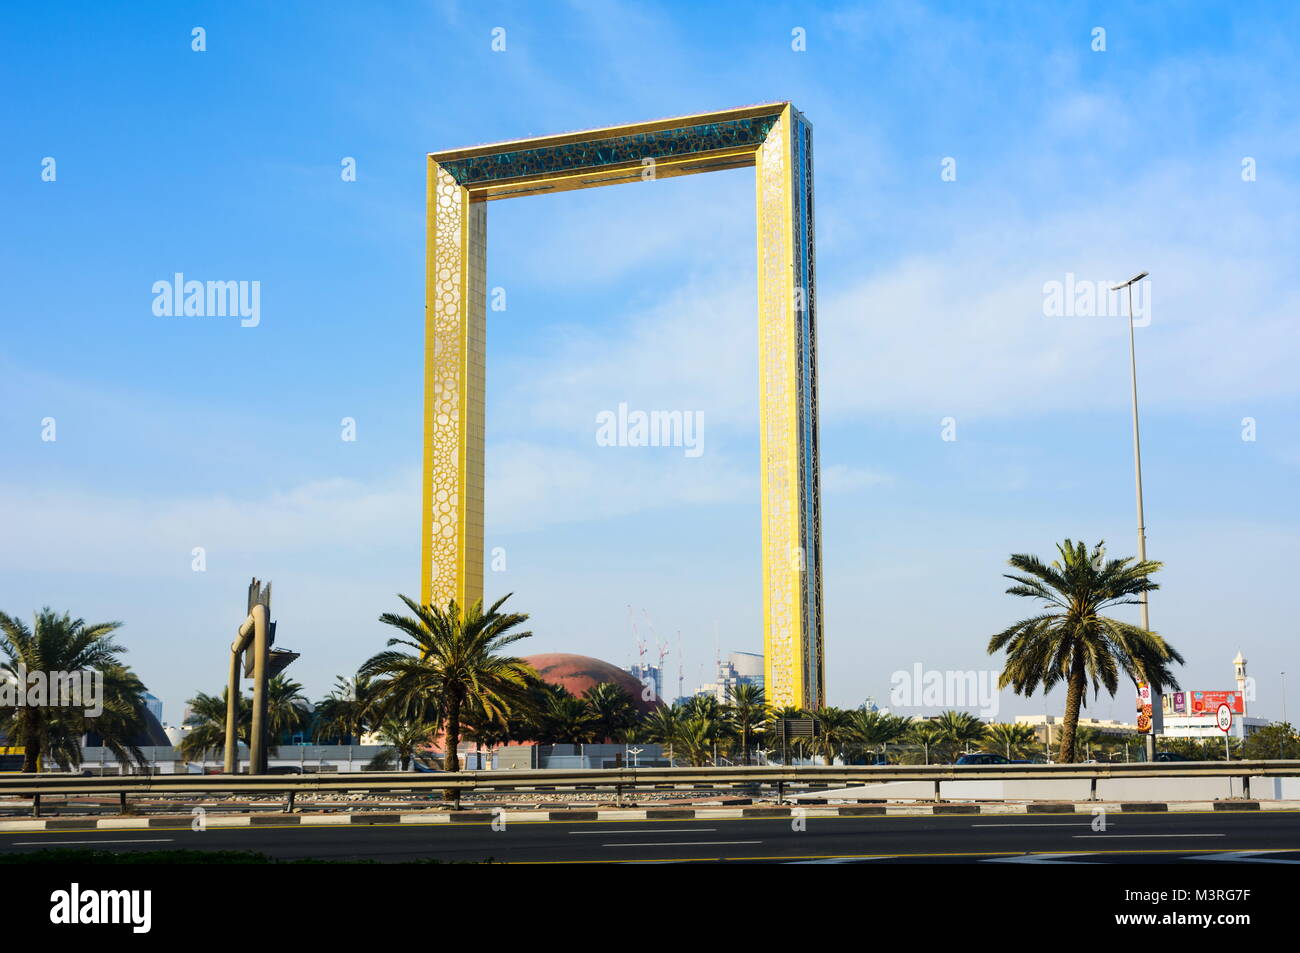 Dubai, Vereinigte Arabische Emirate, 11. Februar 2018: Dubai Frame Gebäude gegen den blauen Himmel. Der Rahmen misst 150 Meter hoch und 93 Meter breit und seine n Stockfoto